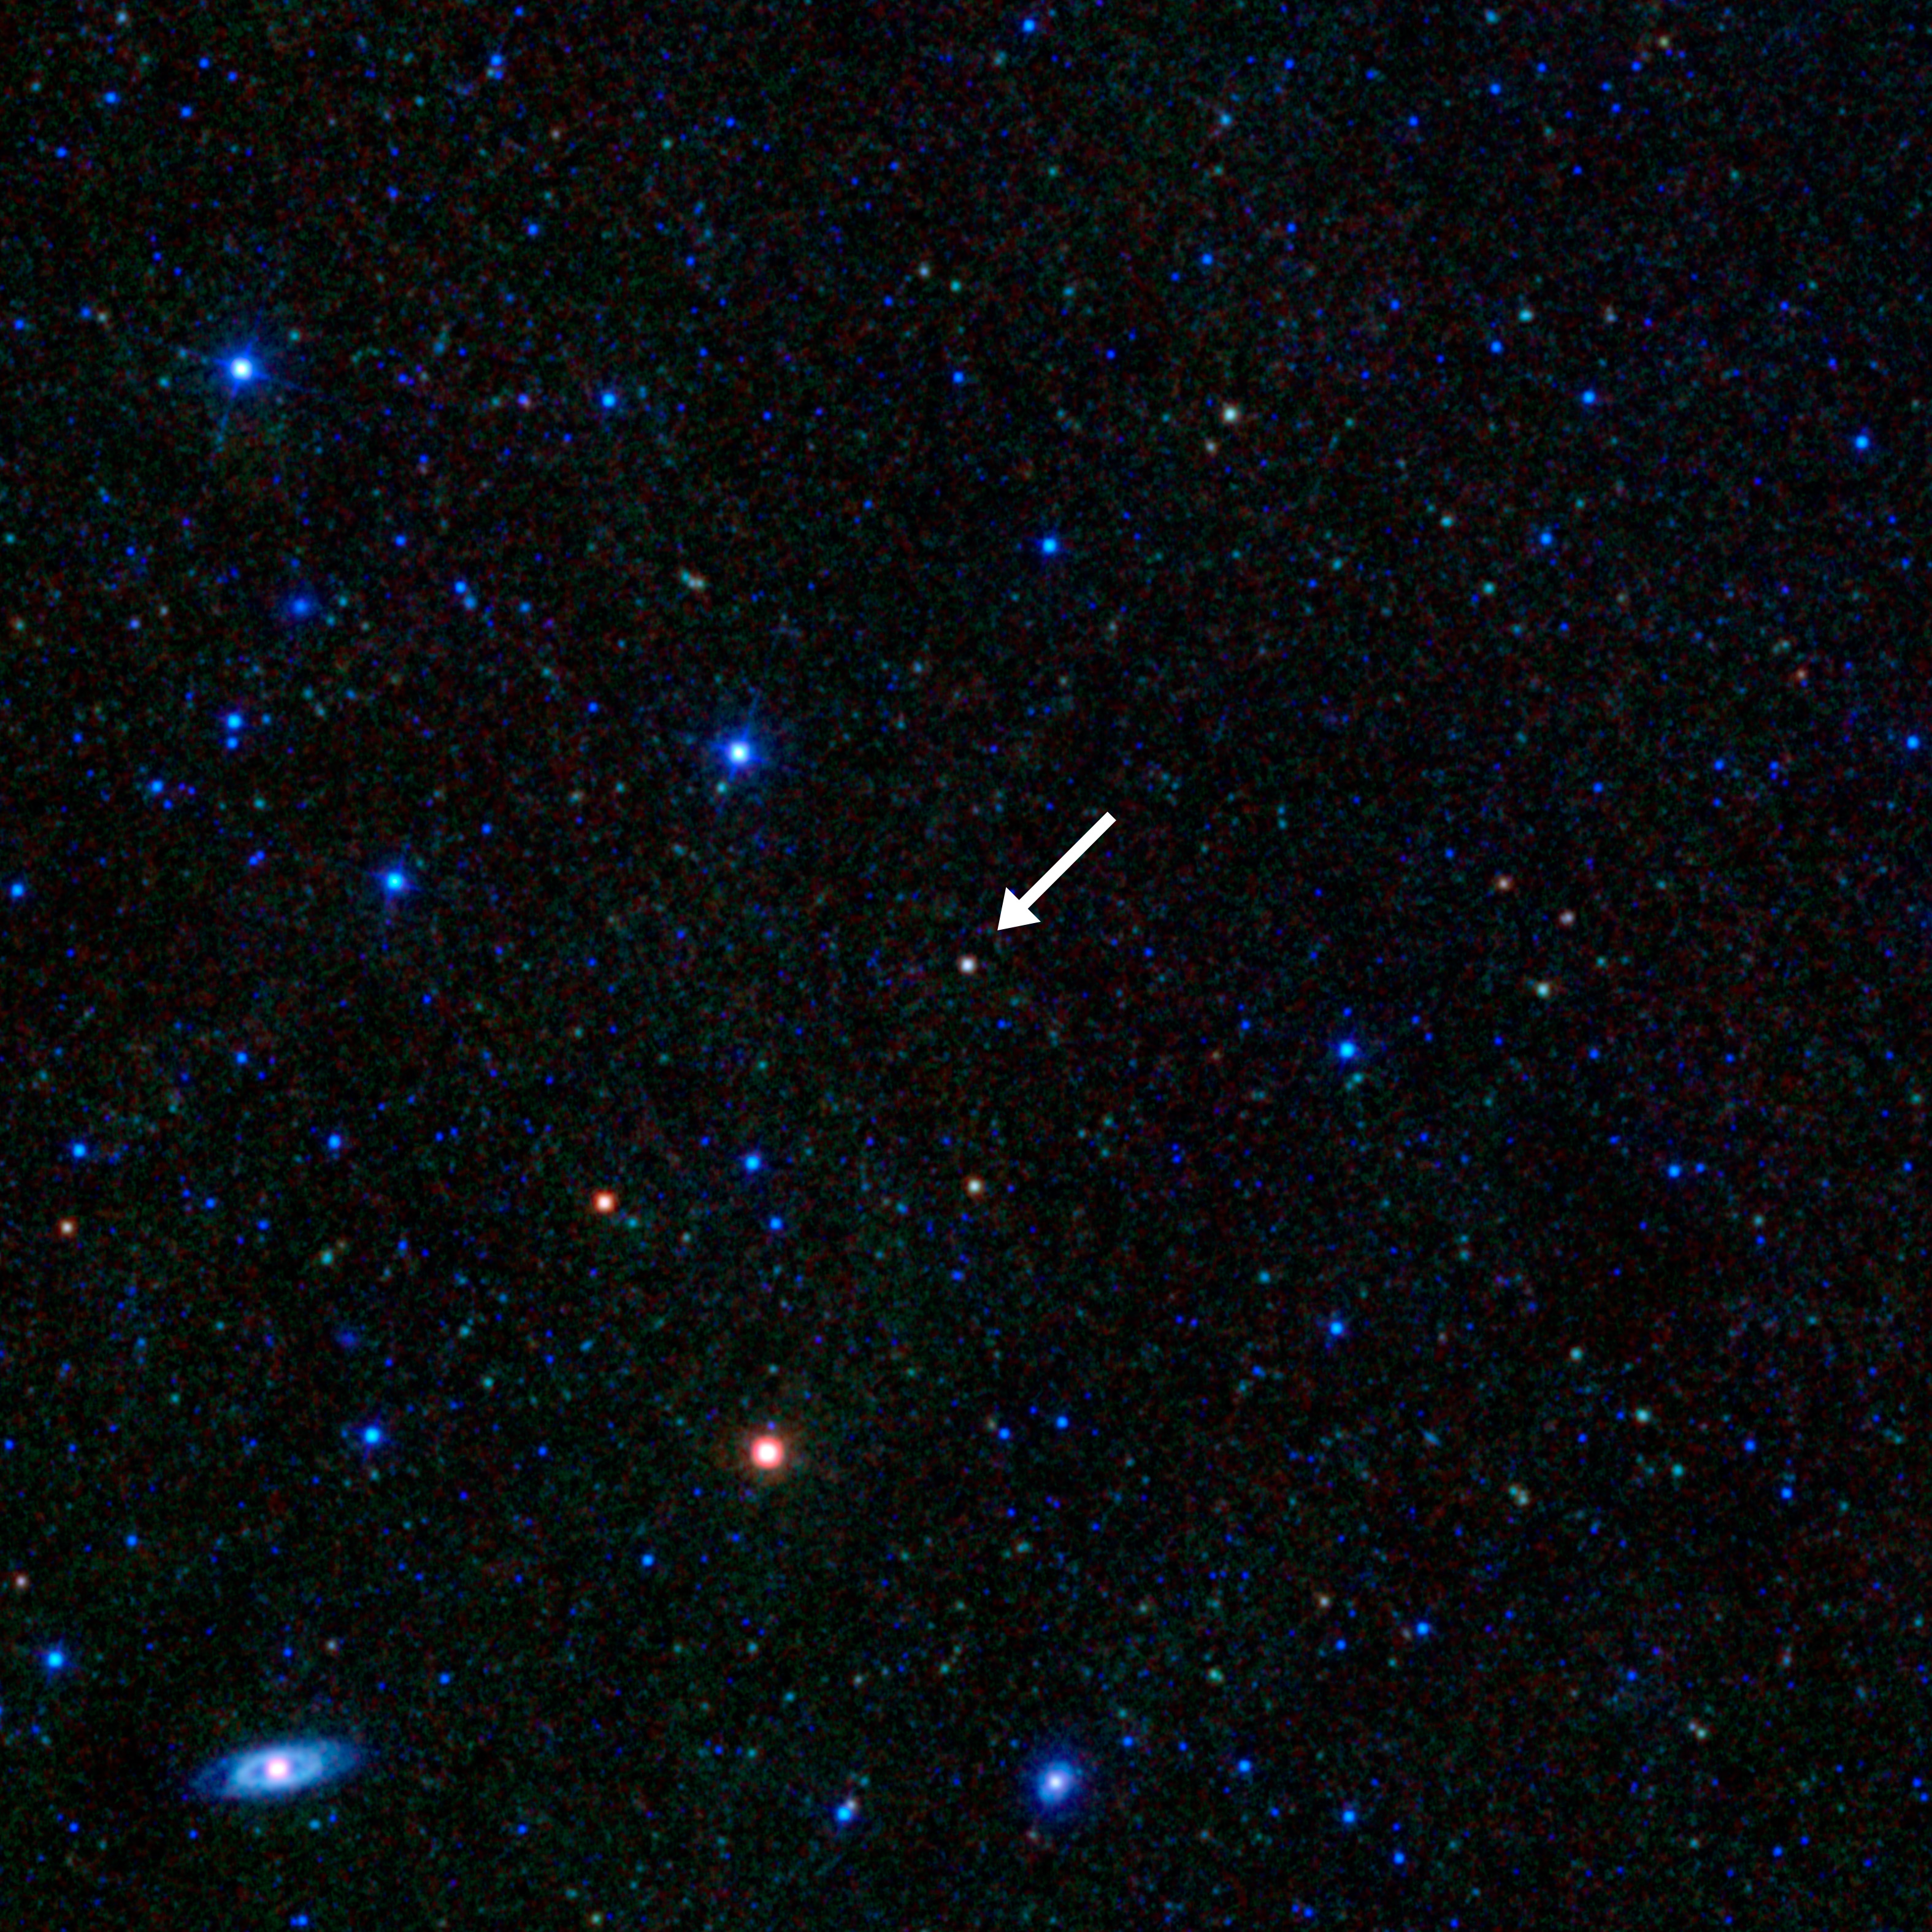 Esta imagen tomada por el Wide-field Infrared Survey Explorer (WISE) de la NASA muestra un blazar, un voraz agujero negro supermasivo dentro de una galaxia con un chorro que apunta directamente a la Tierra.  La imagen muestra un campo de estrellas junto a varios objetos mucho más brillantes.